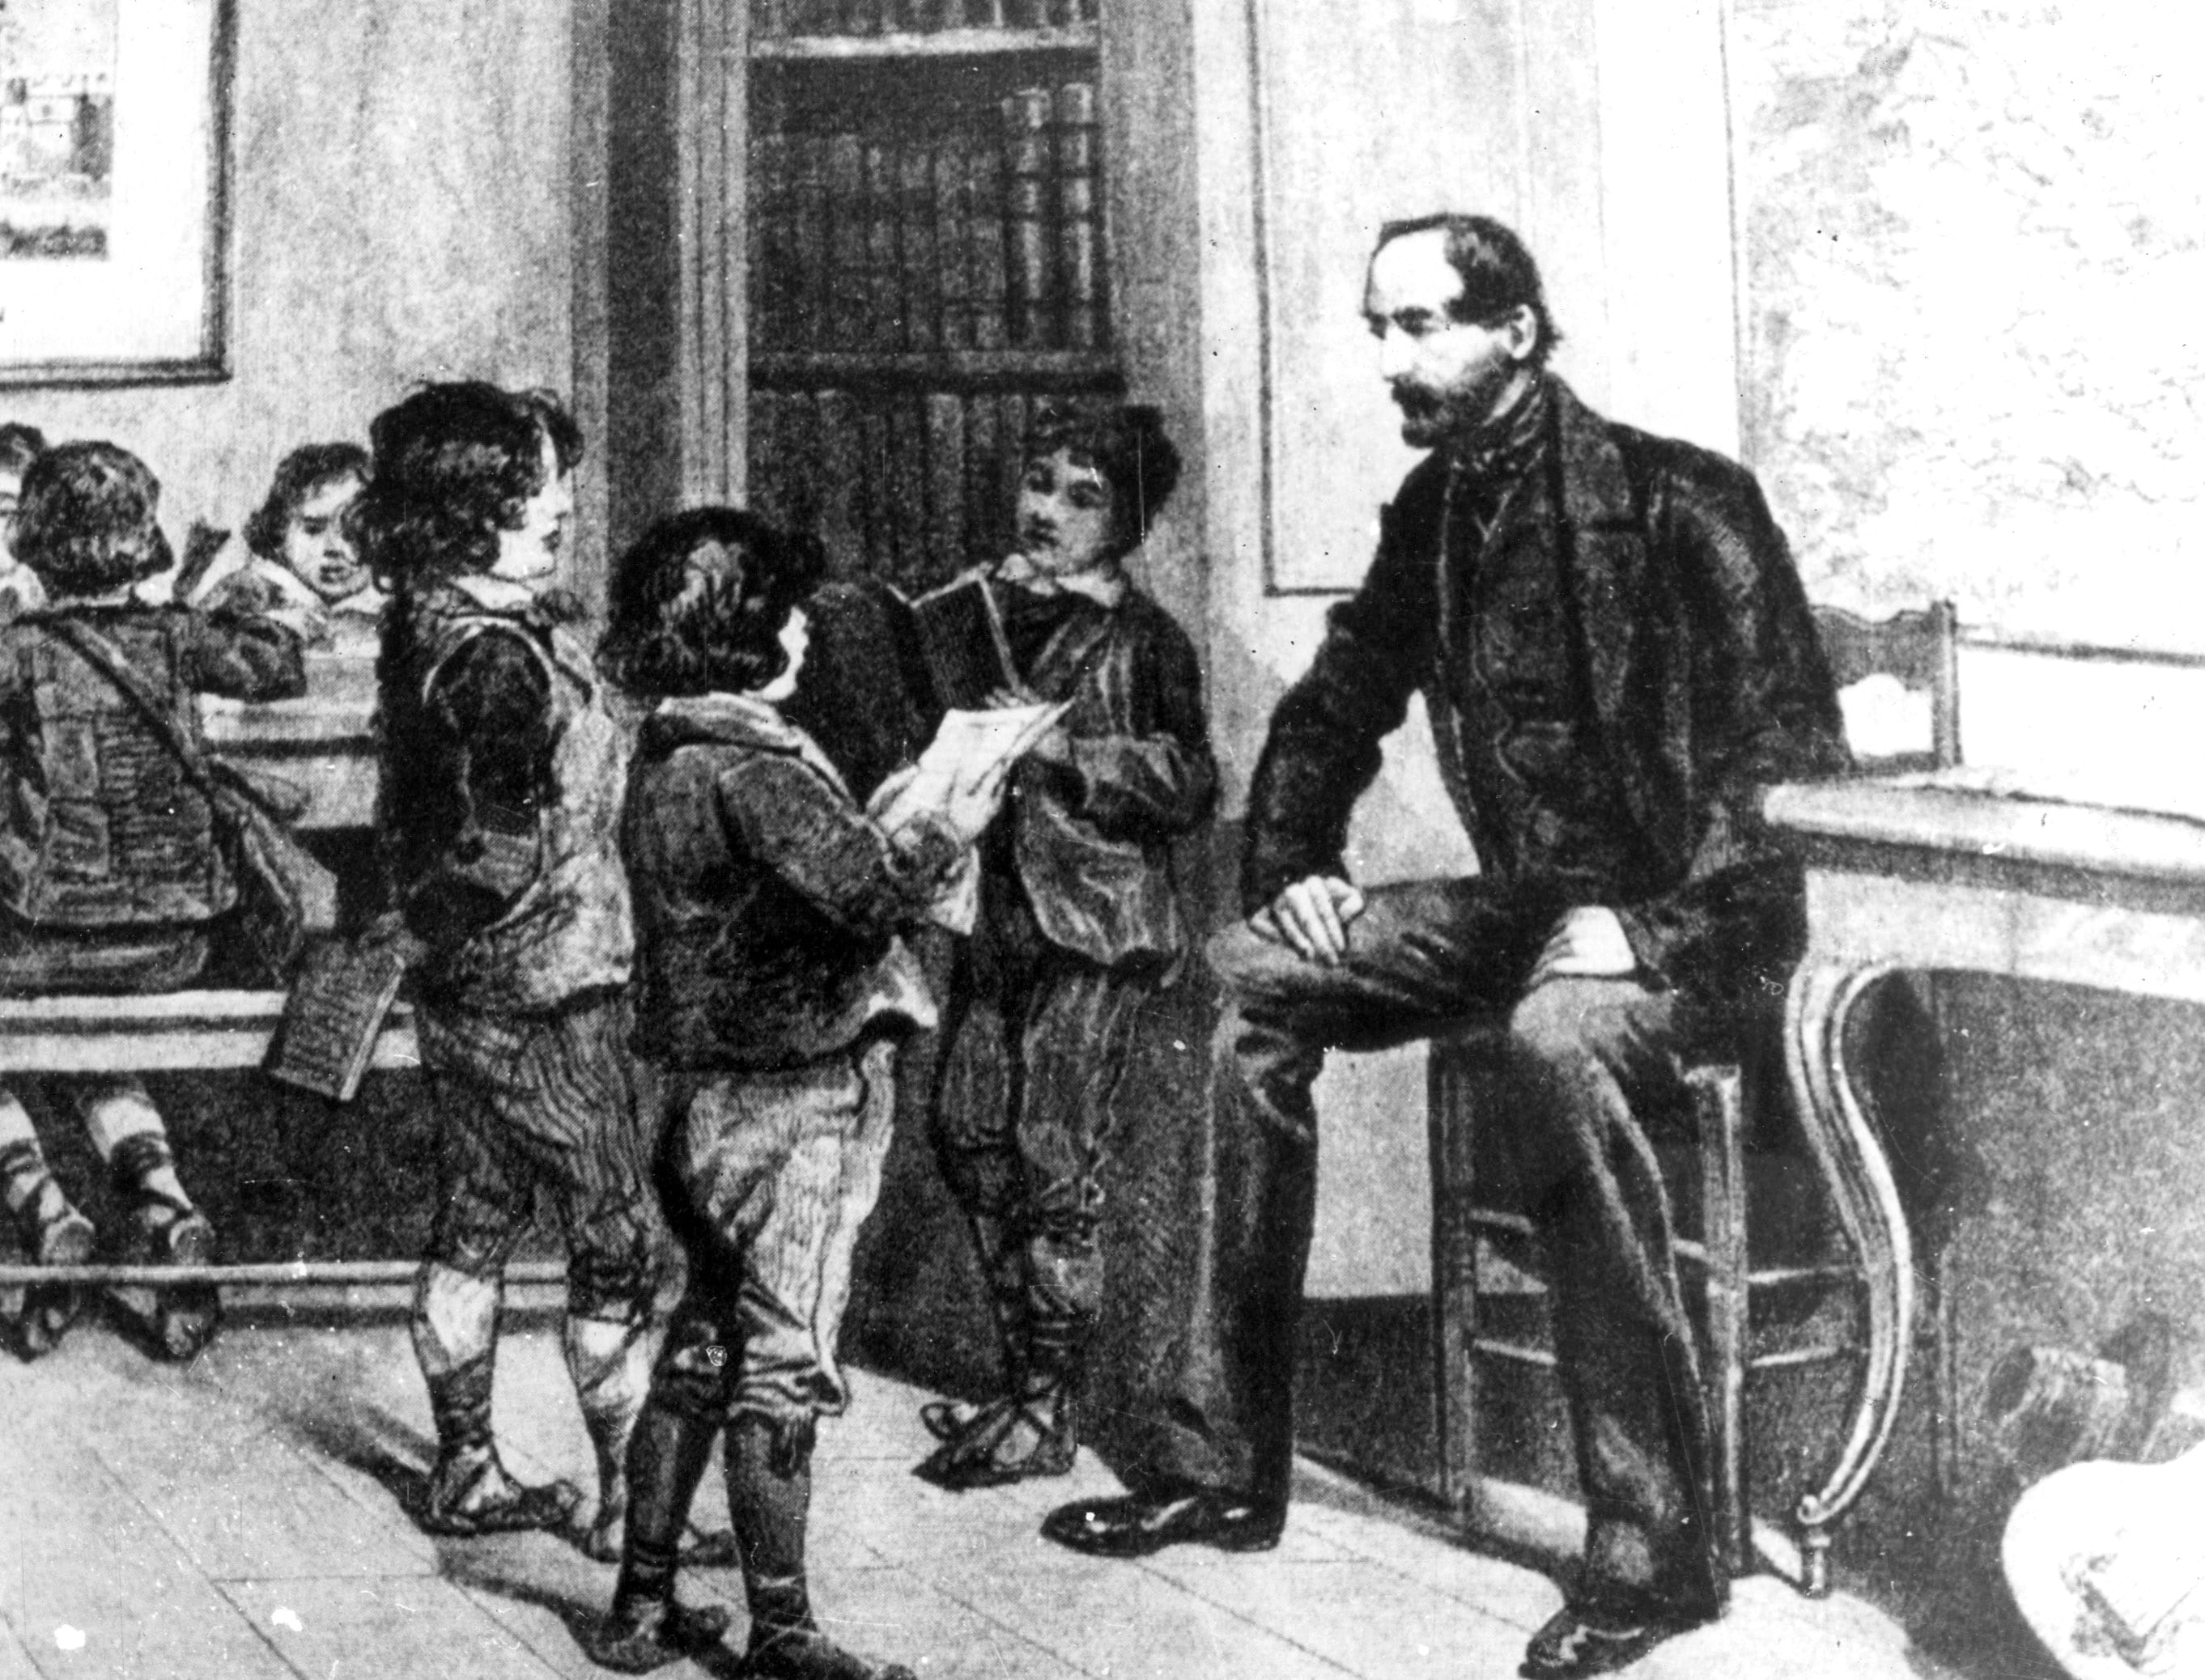 Giuseppe Mazzini insegna l’italiano ai figli degli emigranti nel suo periodo di esilio in Francia, in Svizzera e in Inghilterra tra il 1827 e il 1848, anno in cui rientra in Italia. In questa fase approfondisce il suo pensiero politico, dando vita alla Giovine Italia e alla Seconda Giovine Italia